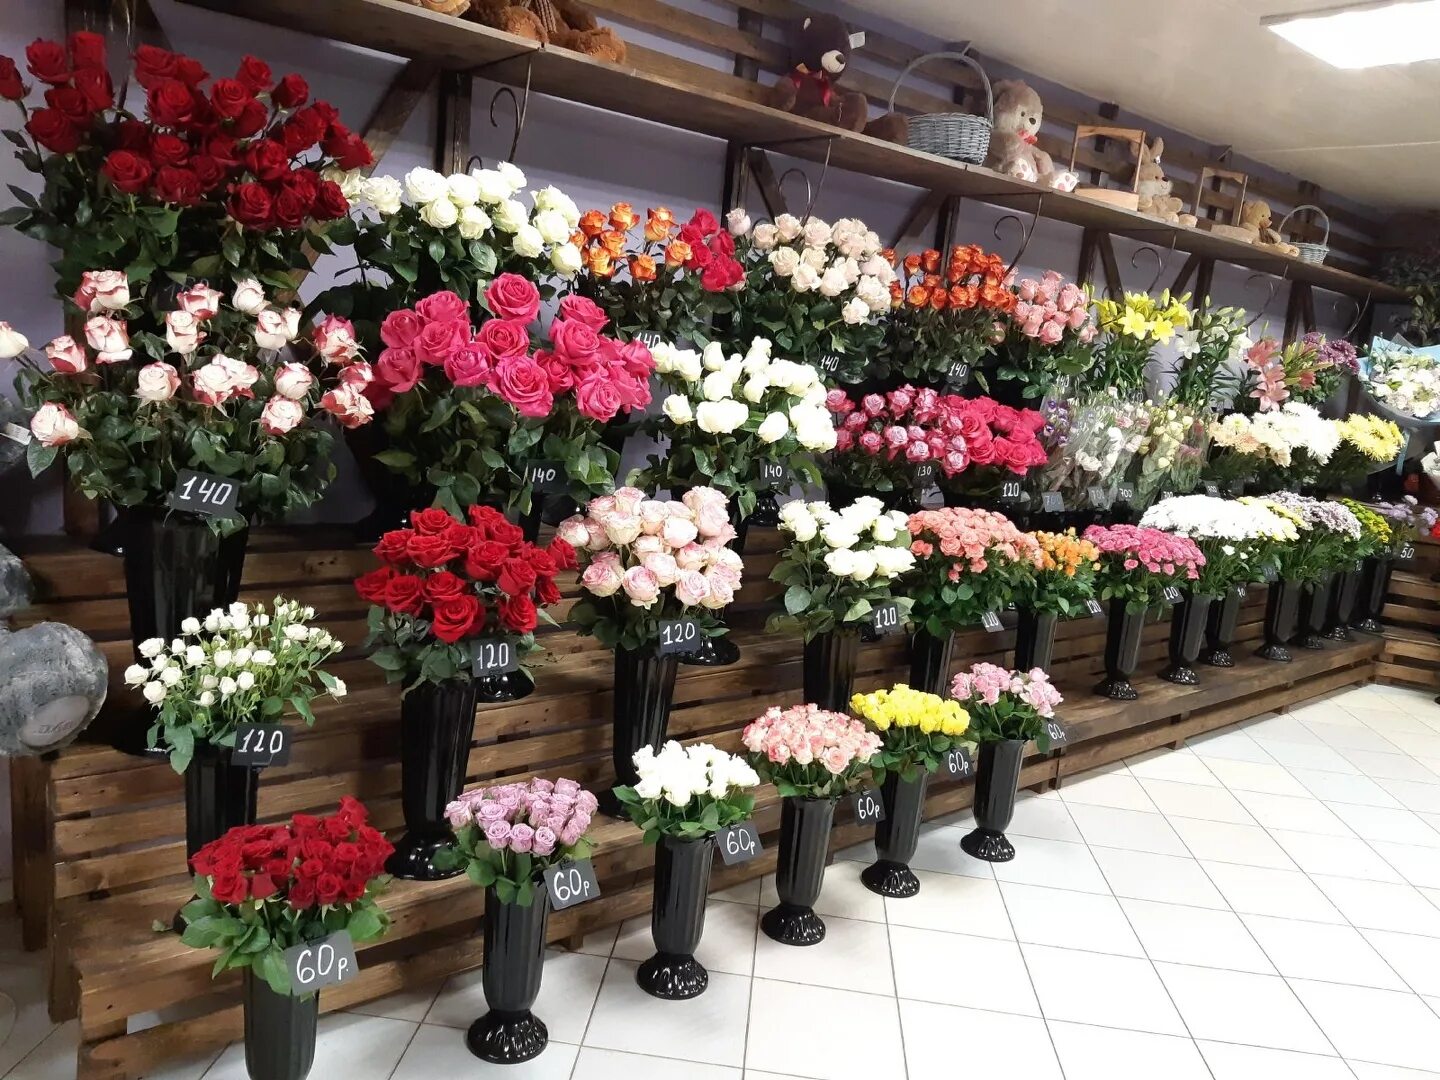 Цветочные магазины петропавловск. Цветы в магазине. Цветочный магазин. Цветы магазин цветов. Цветы магазинные.